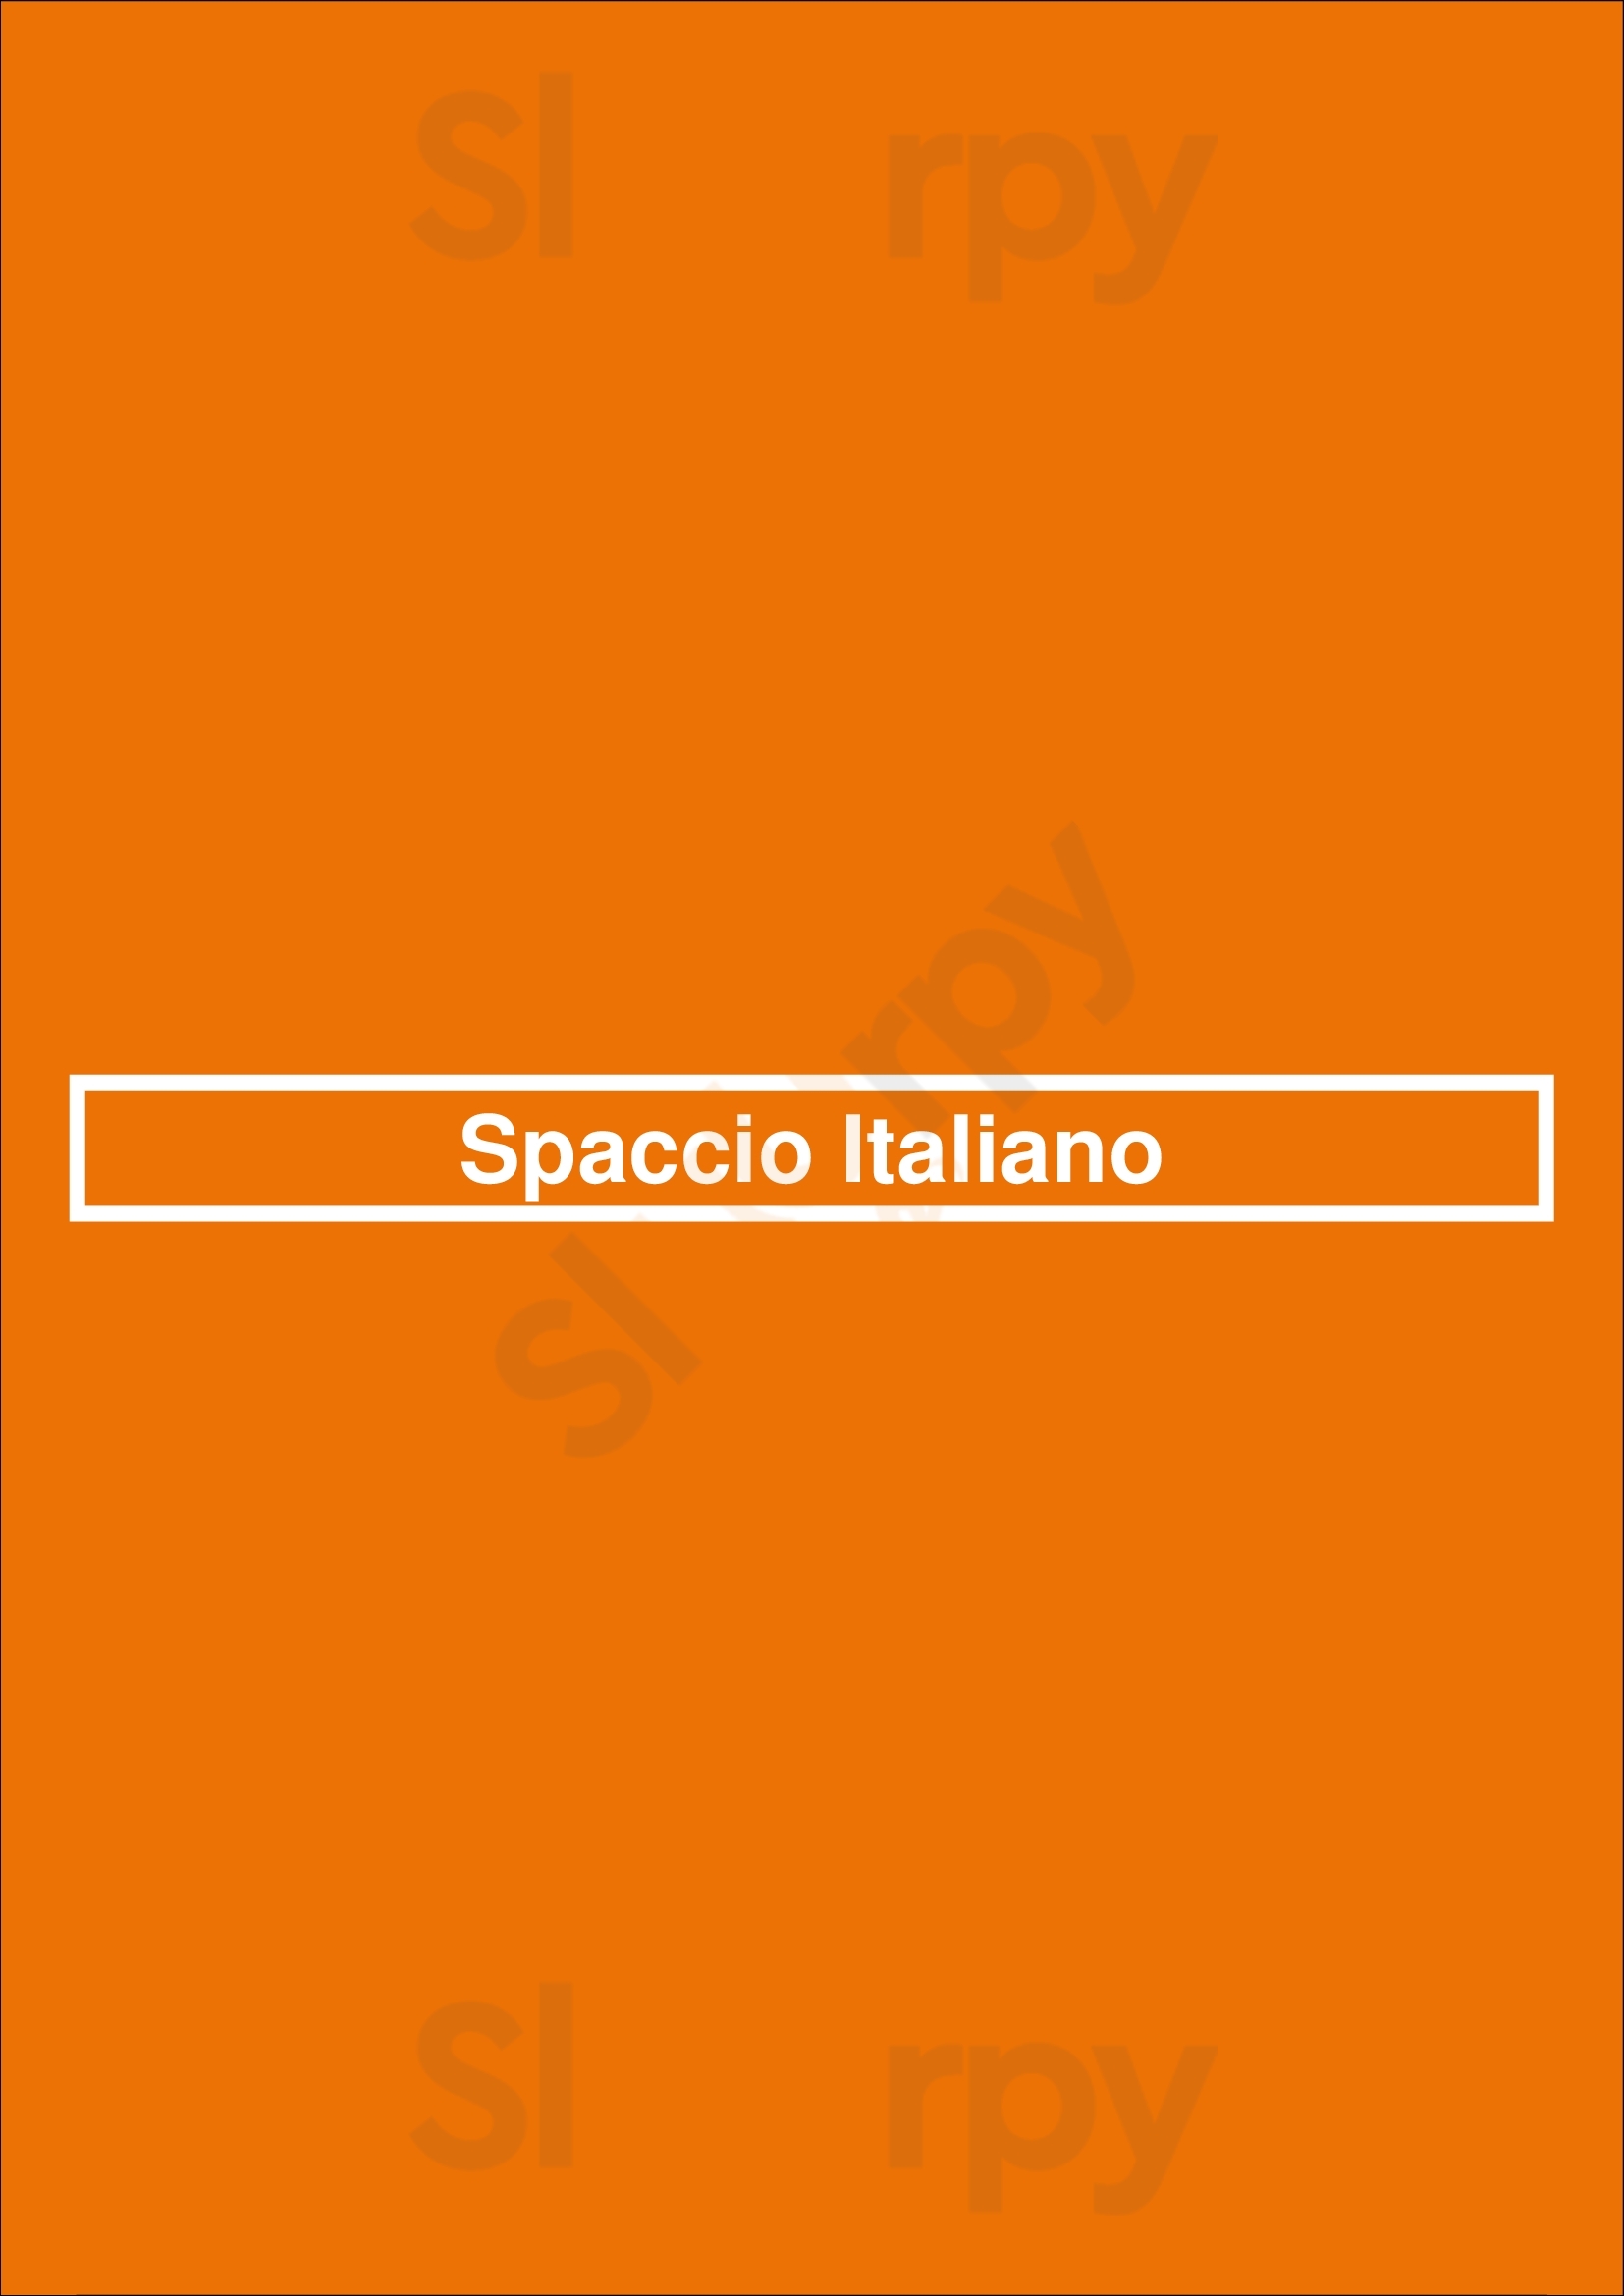 Spaccio Italiano Newport Beach Menu - 1